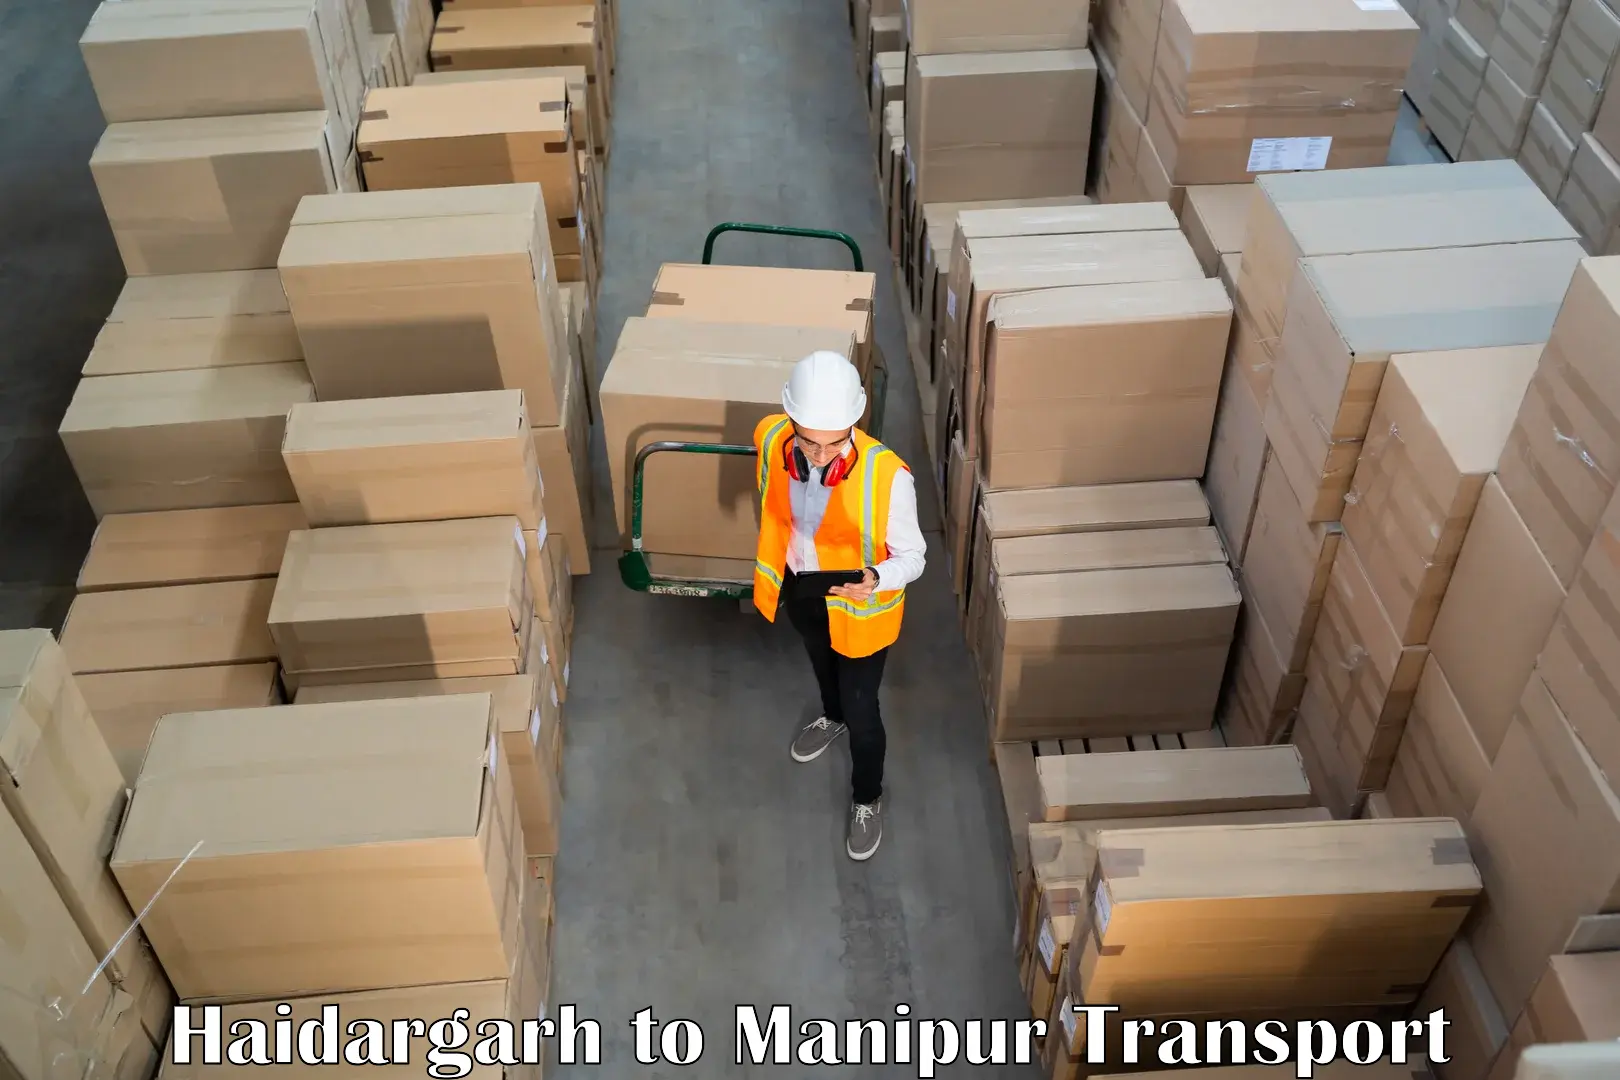 Cargo transport services Haidargarh to Moirang